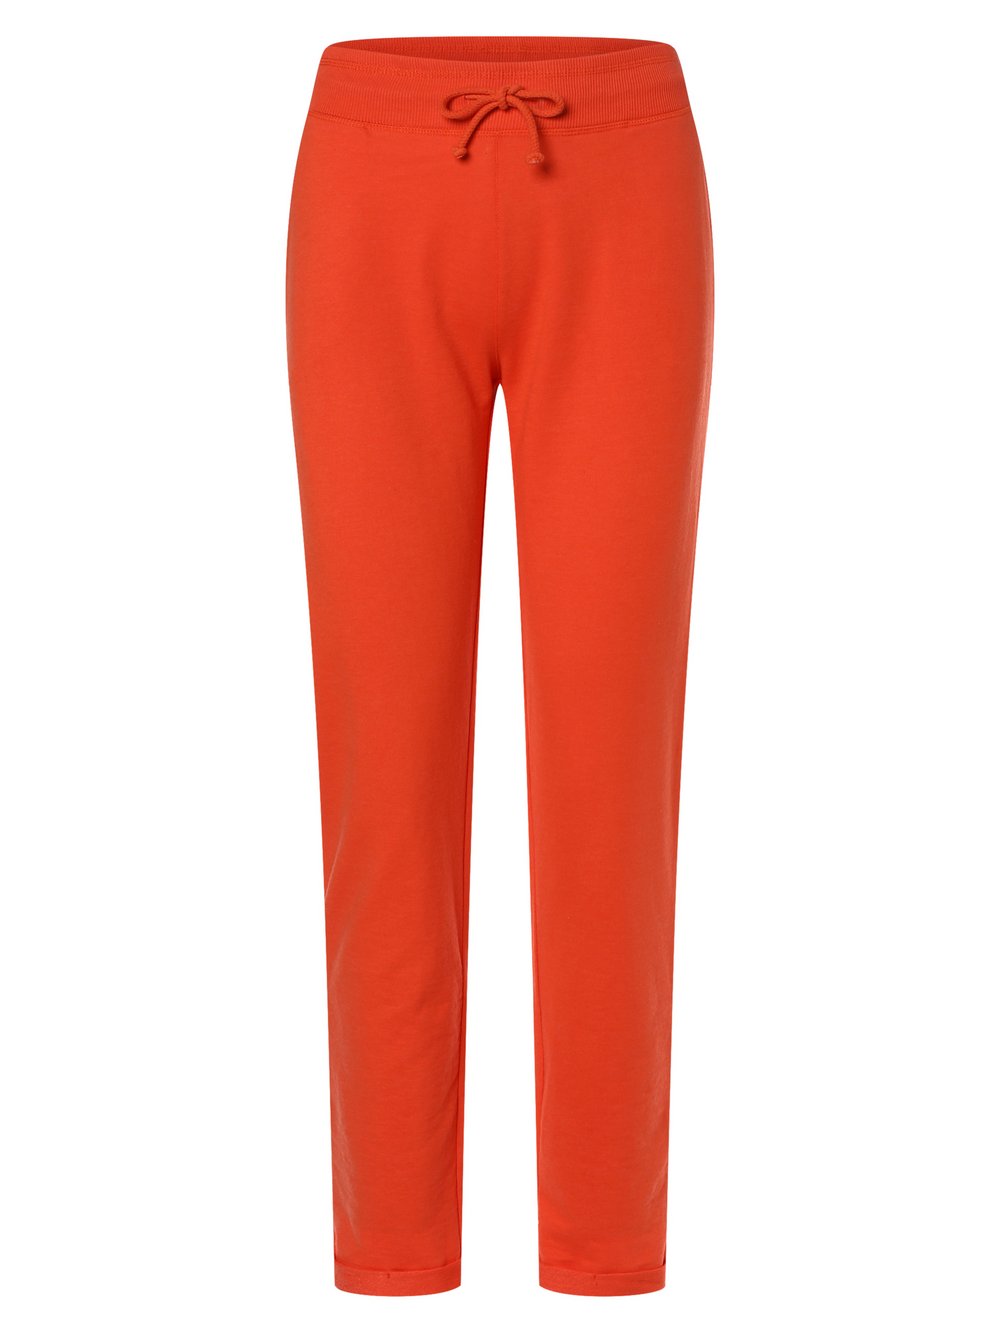 Marie Lund - Damskie spodnie dresowe, pomarańczowy